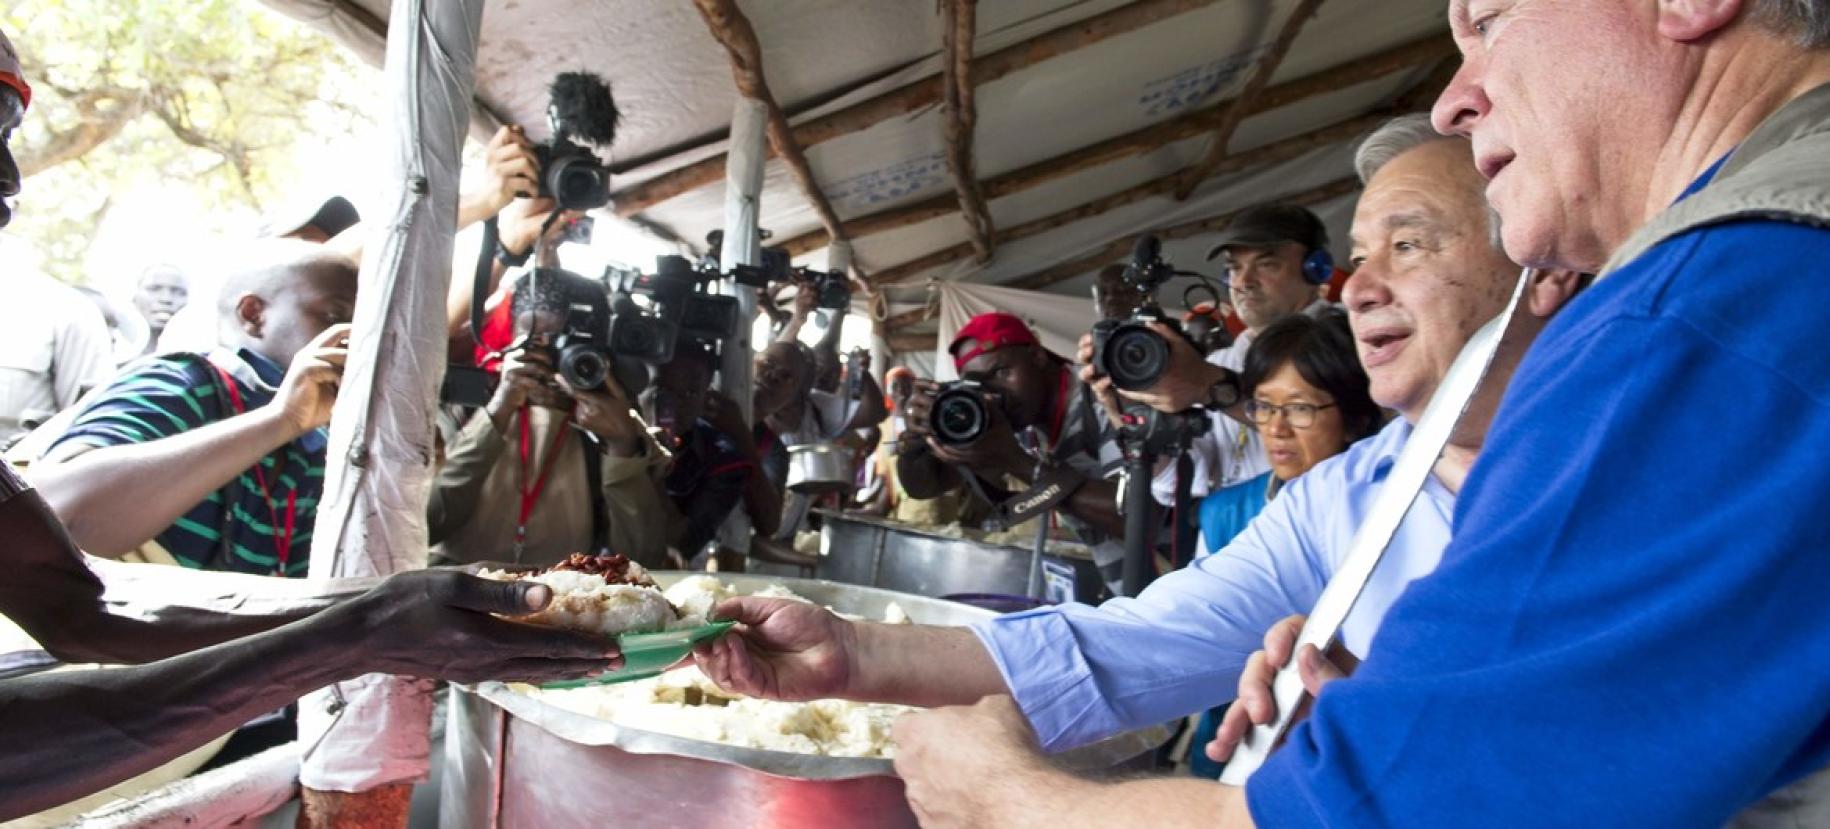 El Secretario General António Guterres (segundo por la derecha) con David Beasley (derecha), Director Ejecutivo del PMA, sirviendo comidas en la zona de recepción de los refugiados recién llegados al asentamiento de Imvepi, en Uganda.